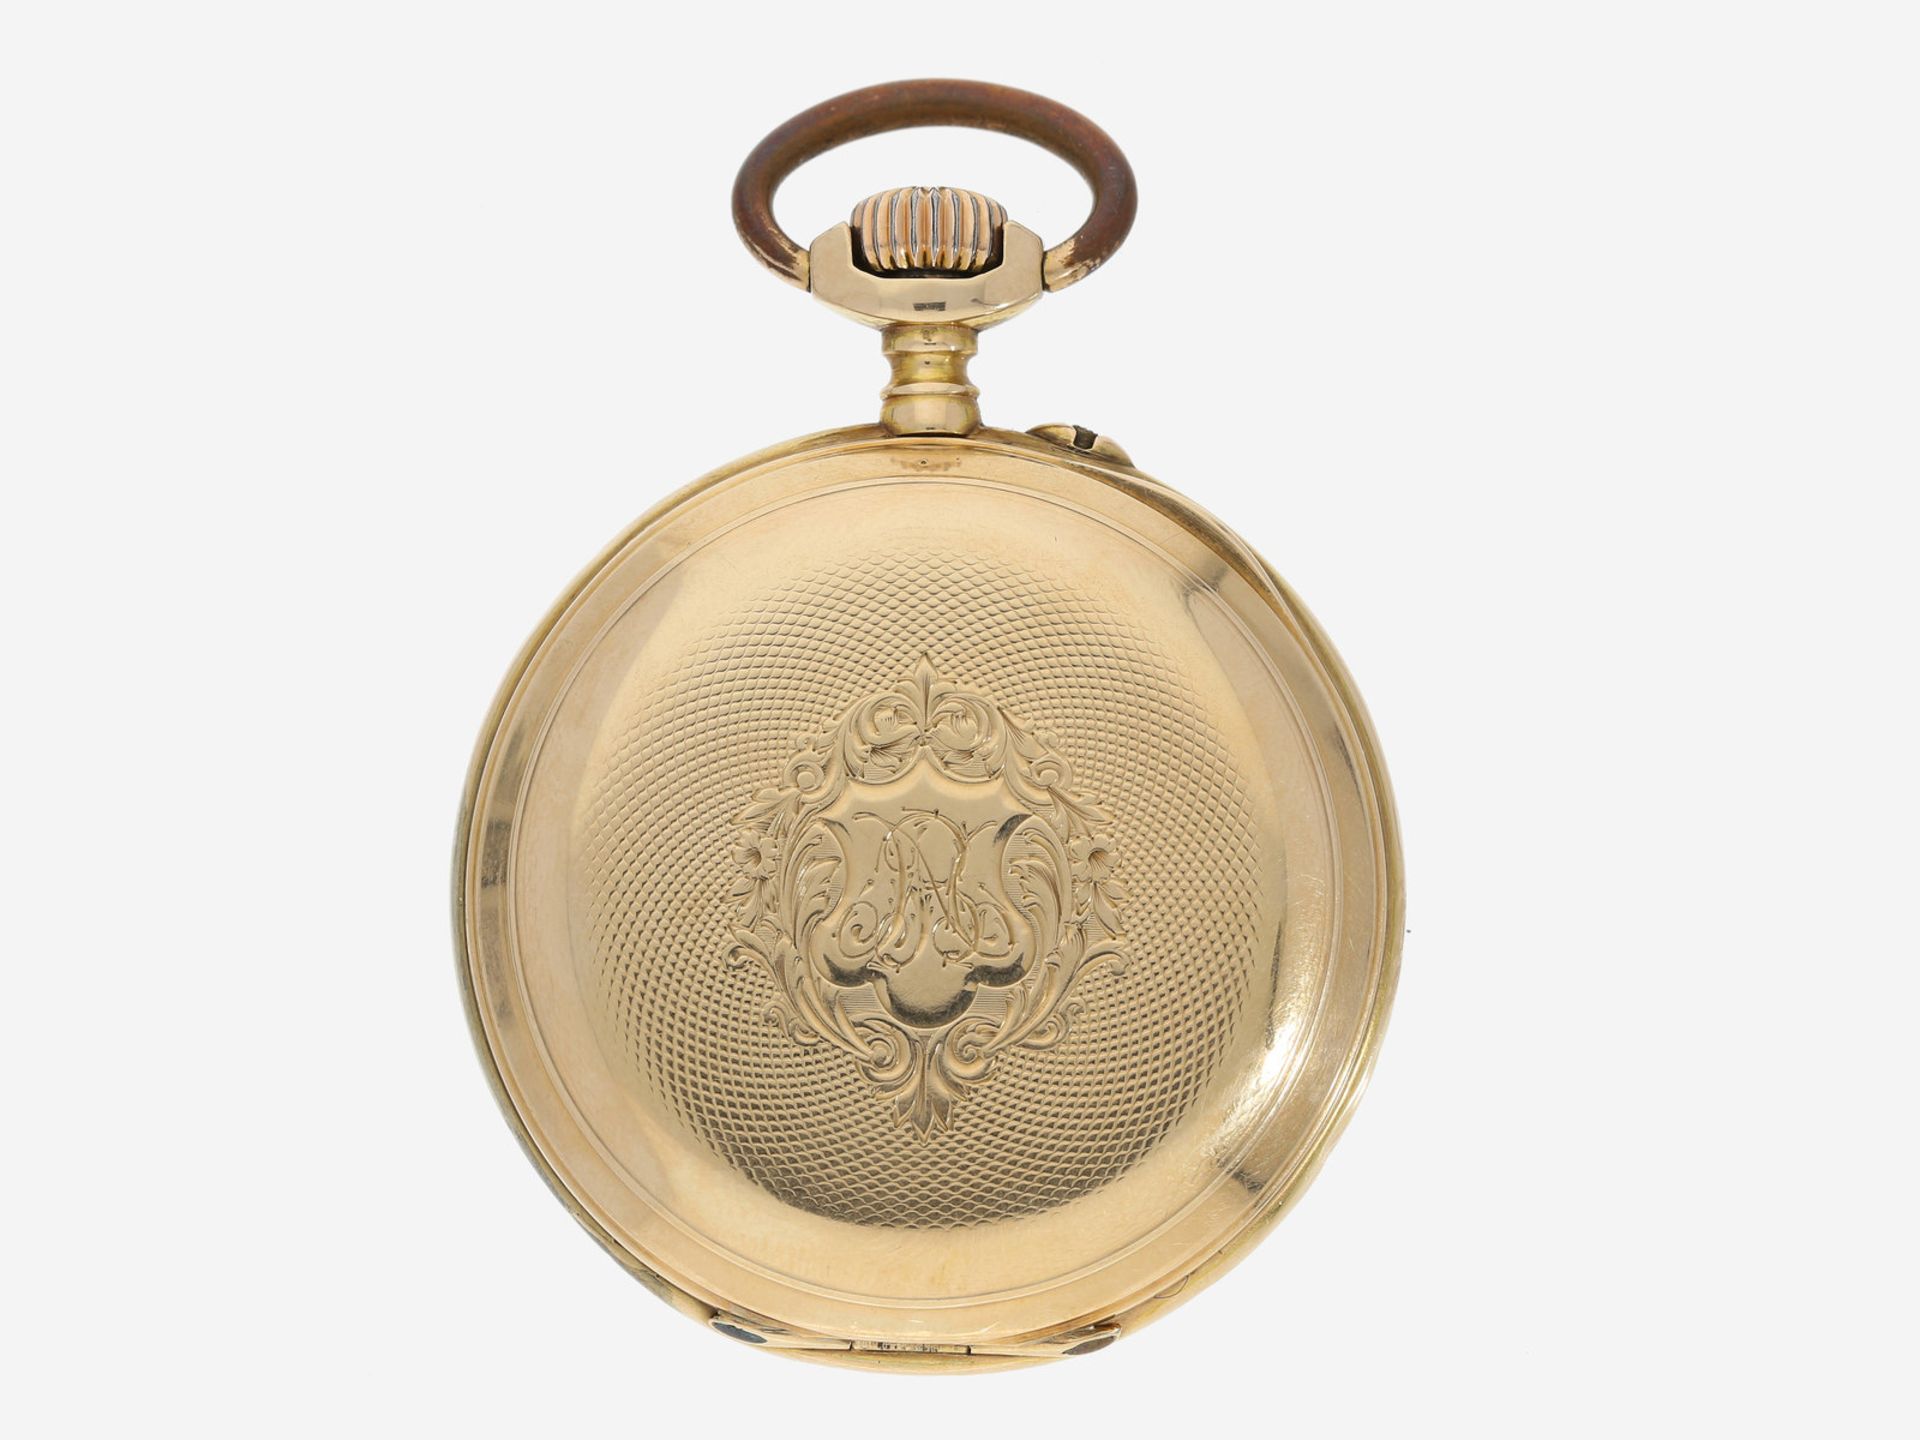 Taschenuhr: goldene Herrentaschenuhr, um 1880, mit hochwertiger goldener Uhrenkette, M. & E. - Image 2 of 5